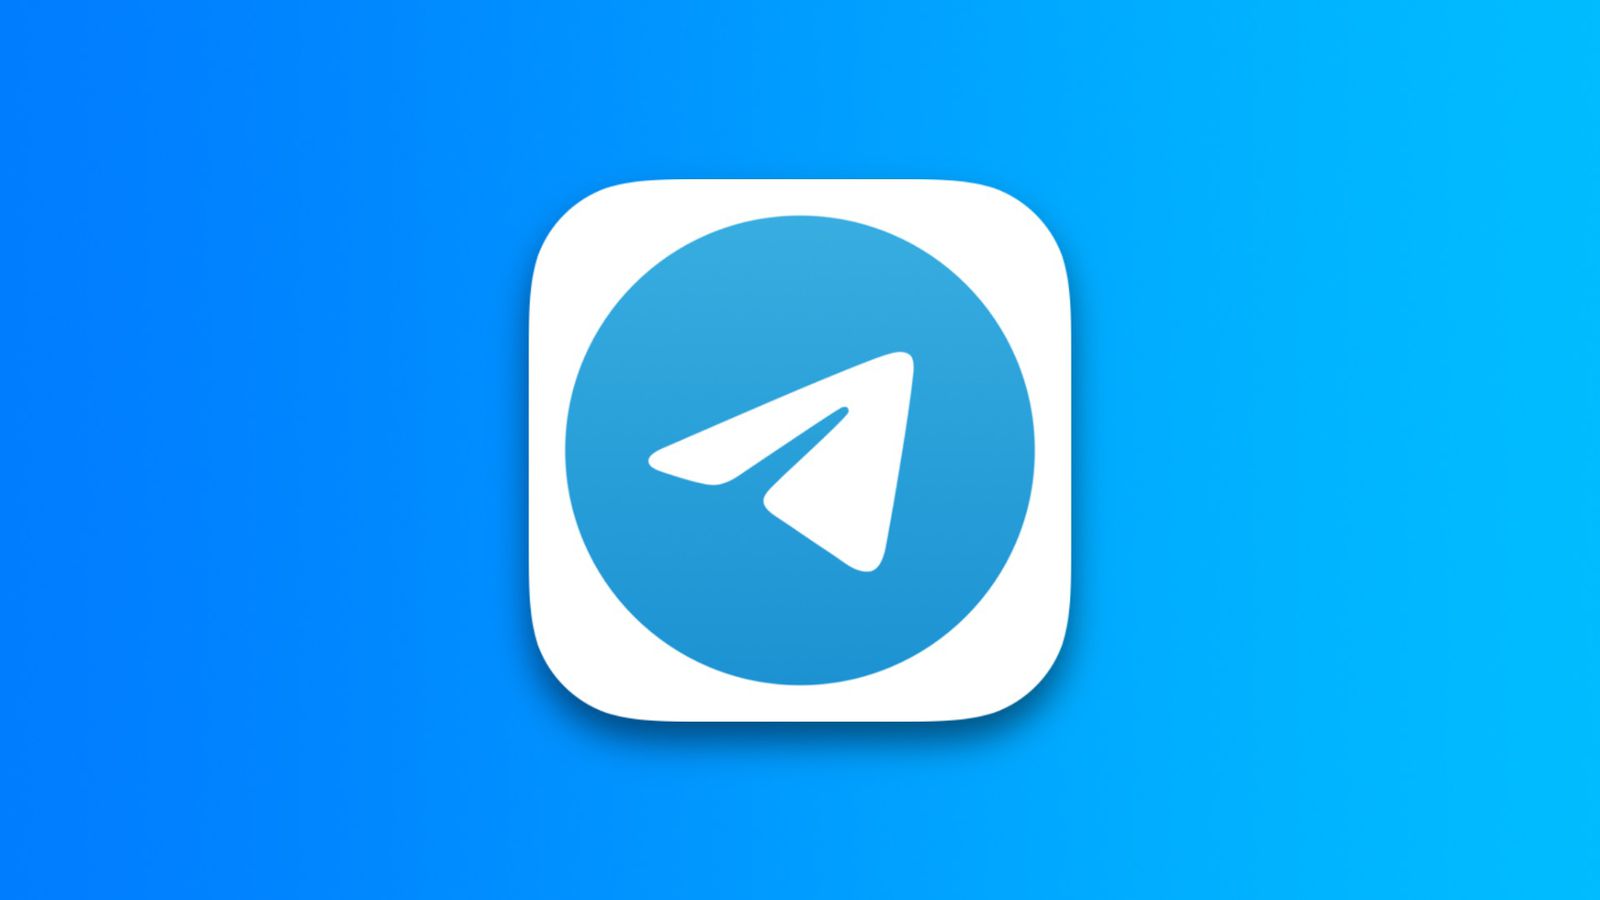 تلگرام یک پیامرسان بسیار محبوب است.